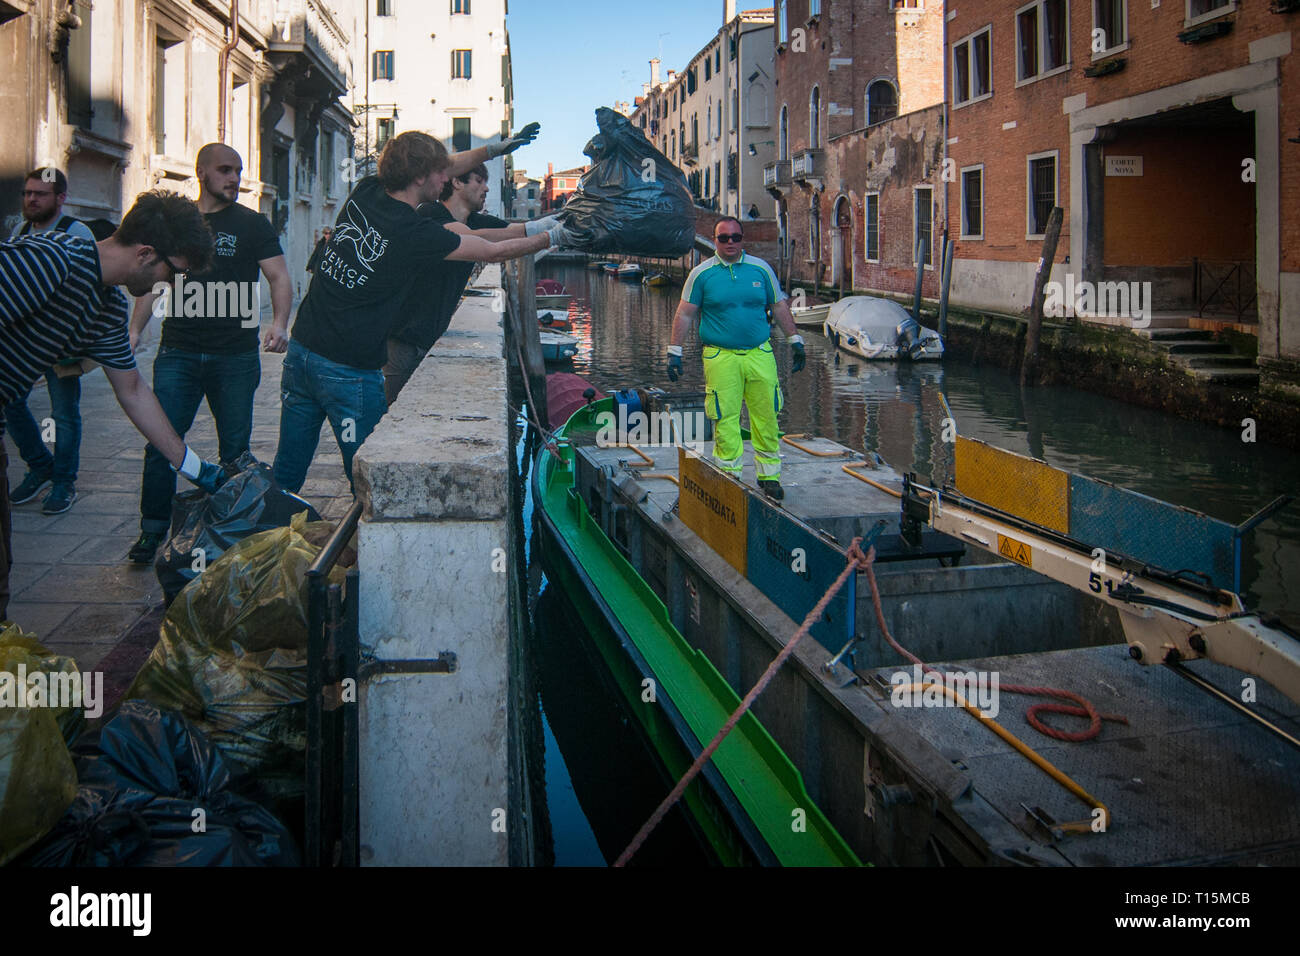 Venise, Italie - 23 mars, 2019. Les bénévoles sacs de plastique recueillies  sur les hauts-fonds de la ville en un bateau des ordures de la municipalité  le 23 mars 2019, à Venise